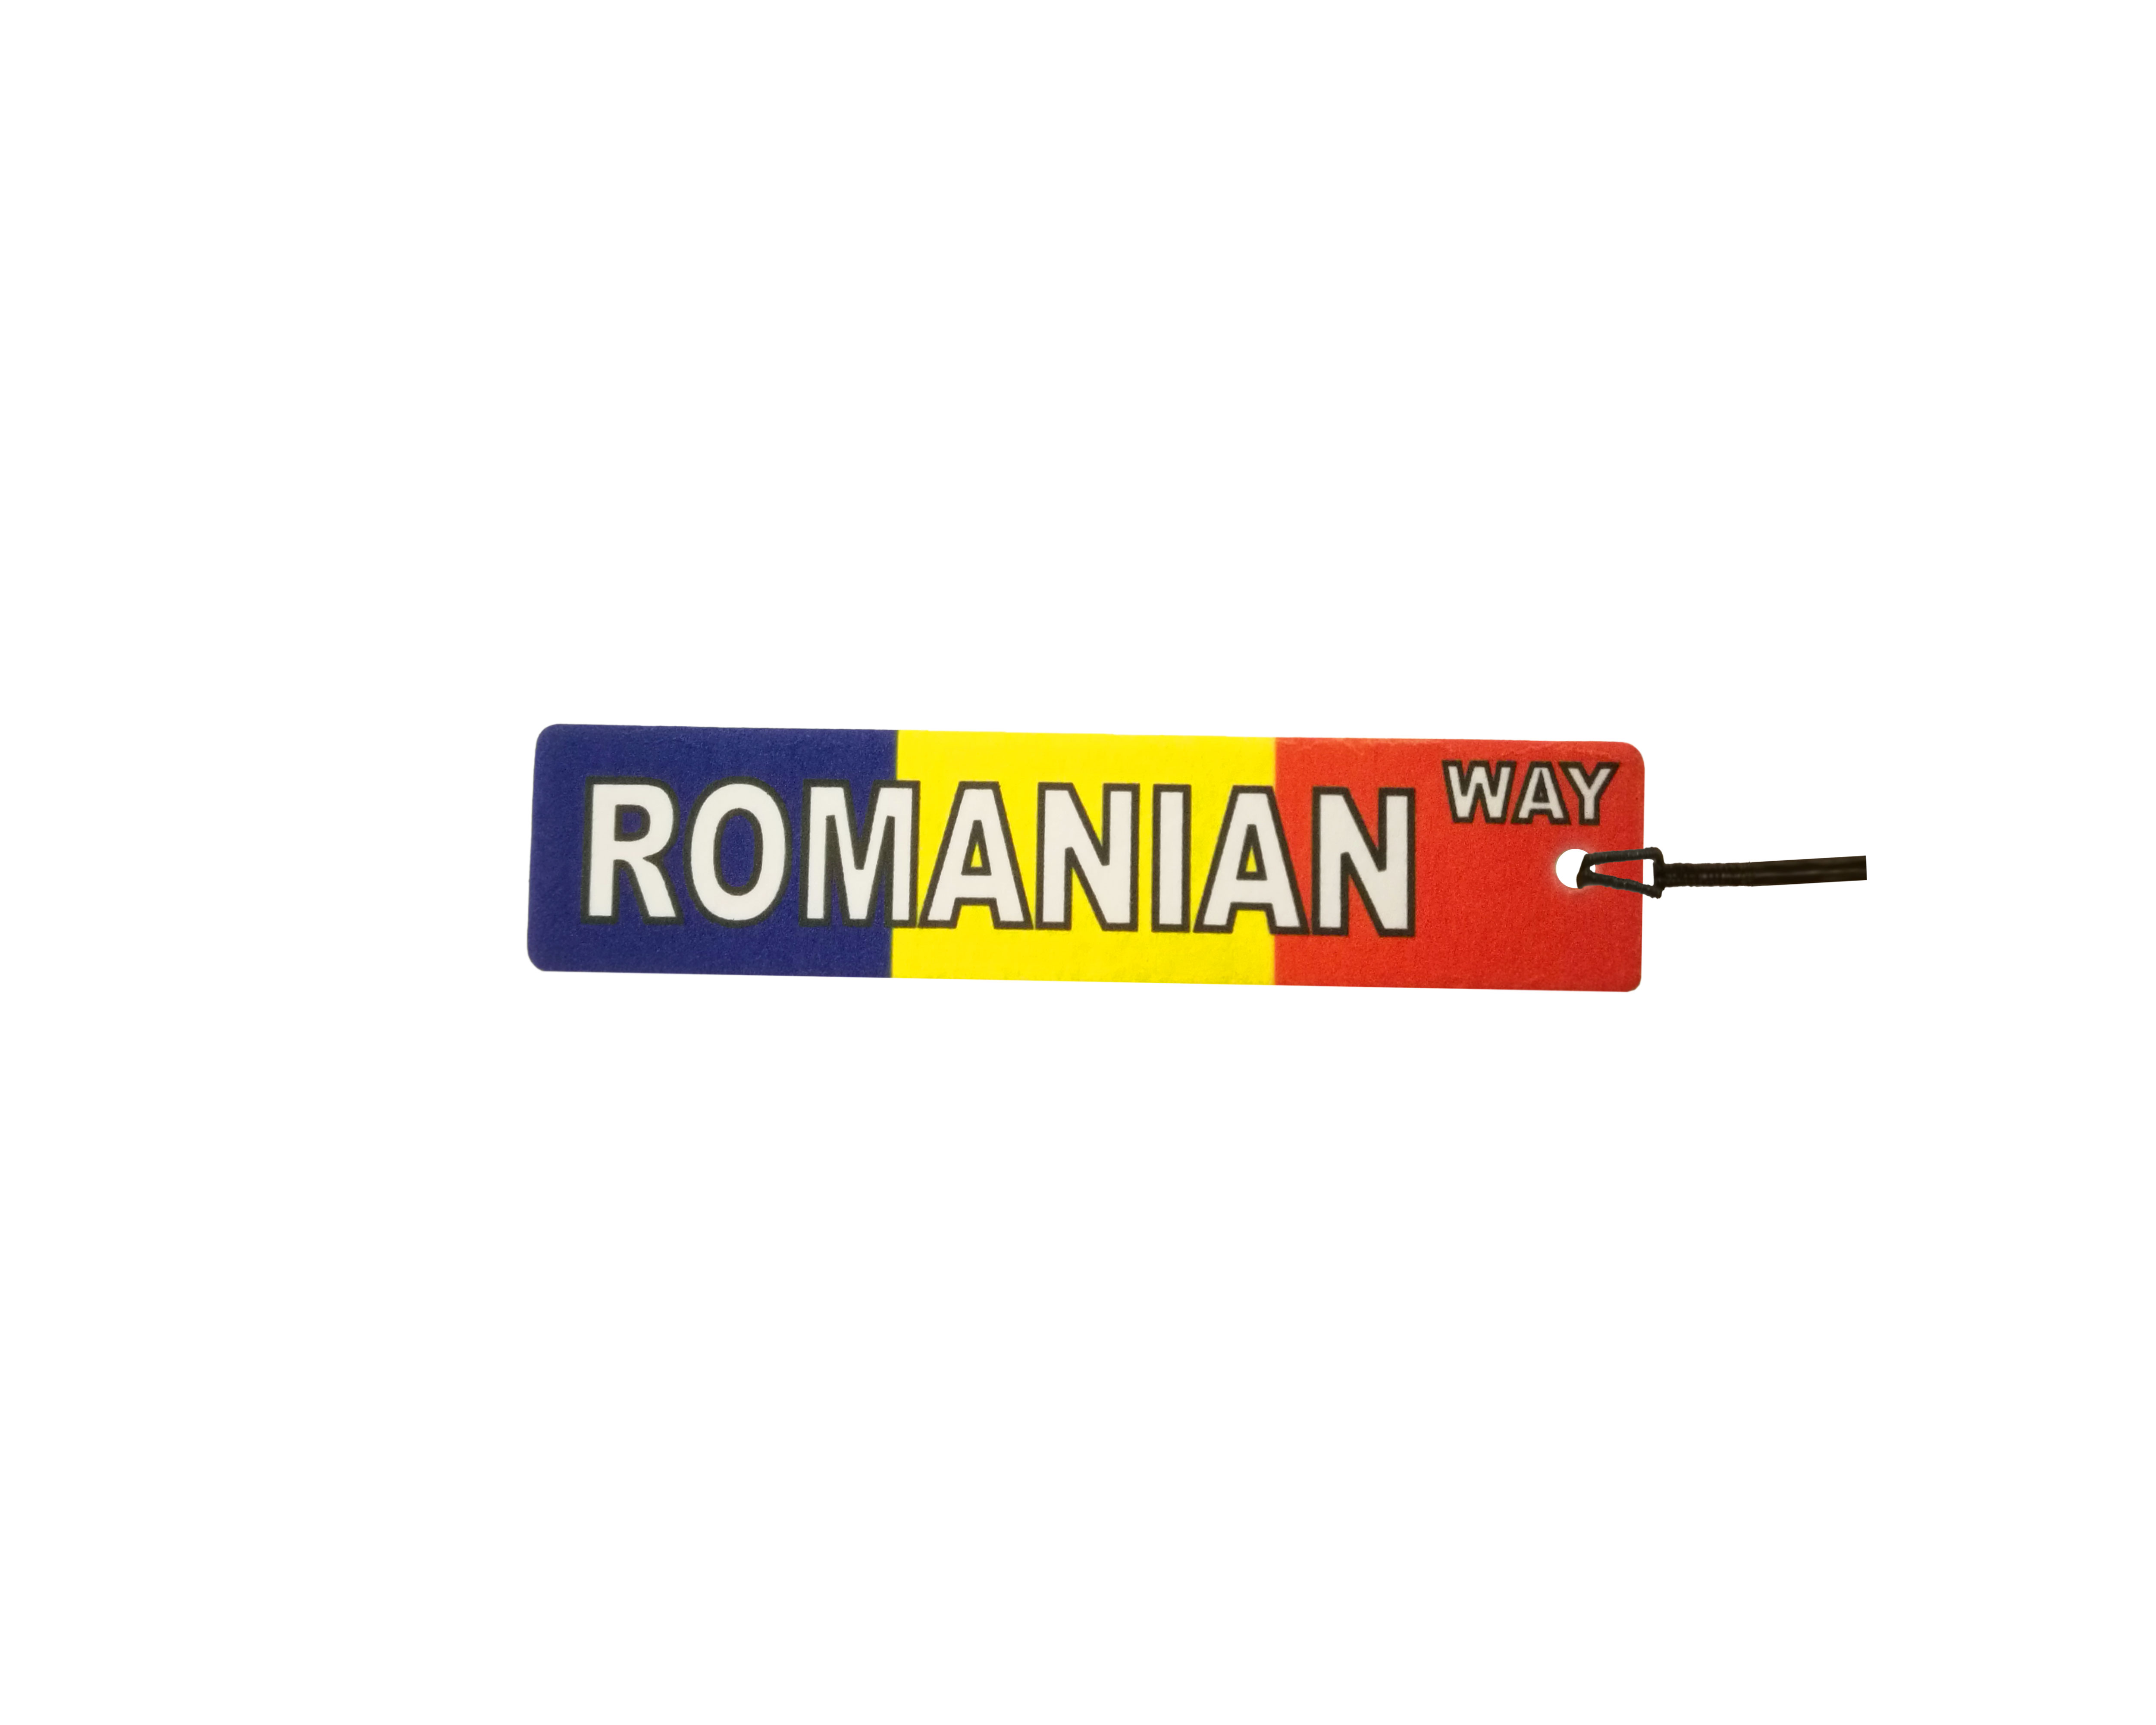 Romanian Way Street Sign